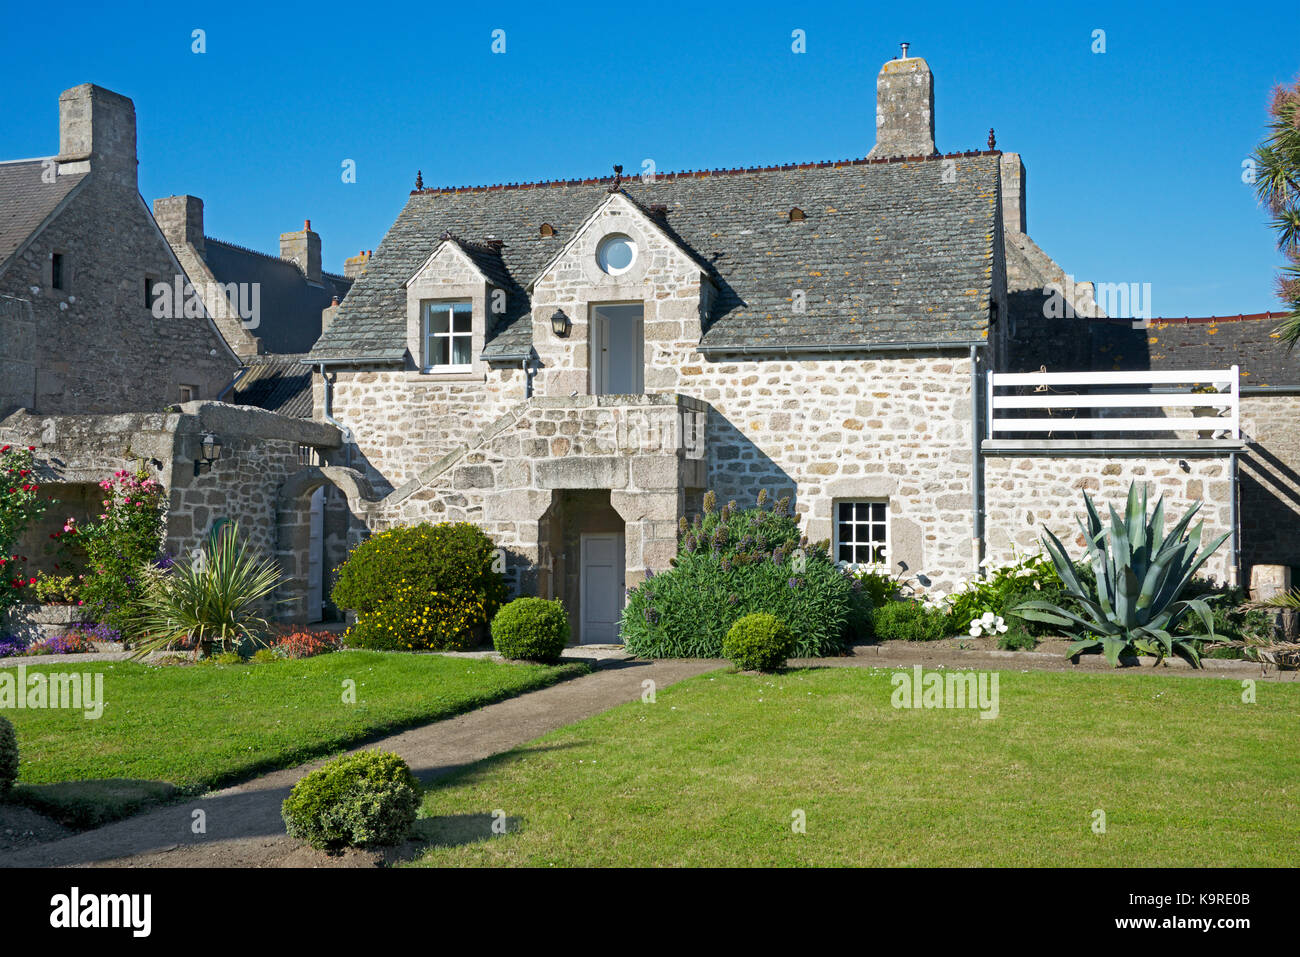 Traditionelle Steinhaus innerhalb von Mauern umgebenen Garten Barfleur Cotentin Halbinsel, Normandie Frankreich Stockfoto